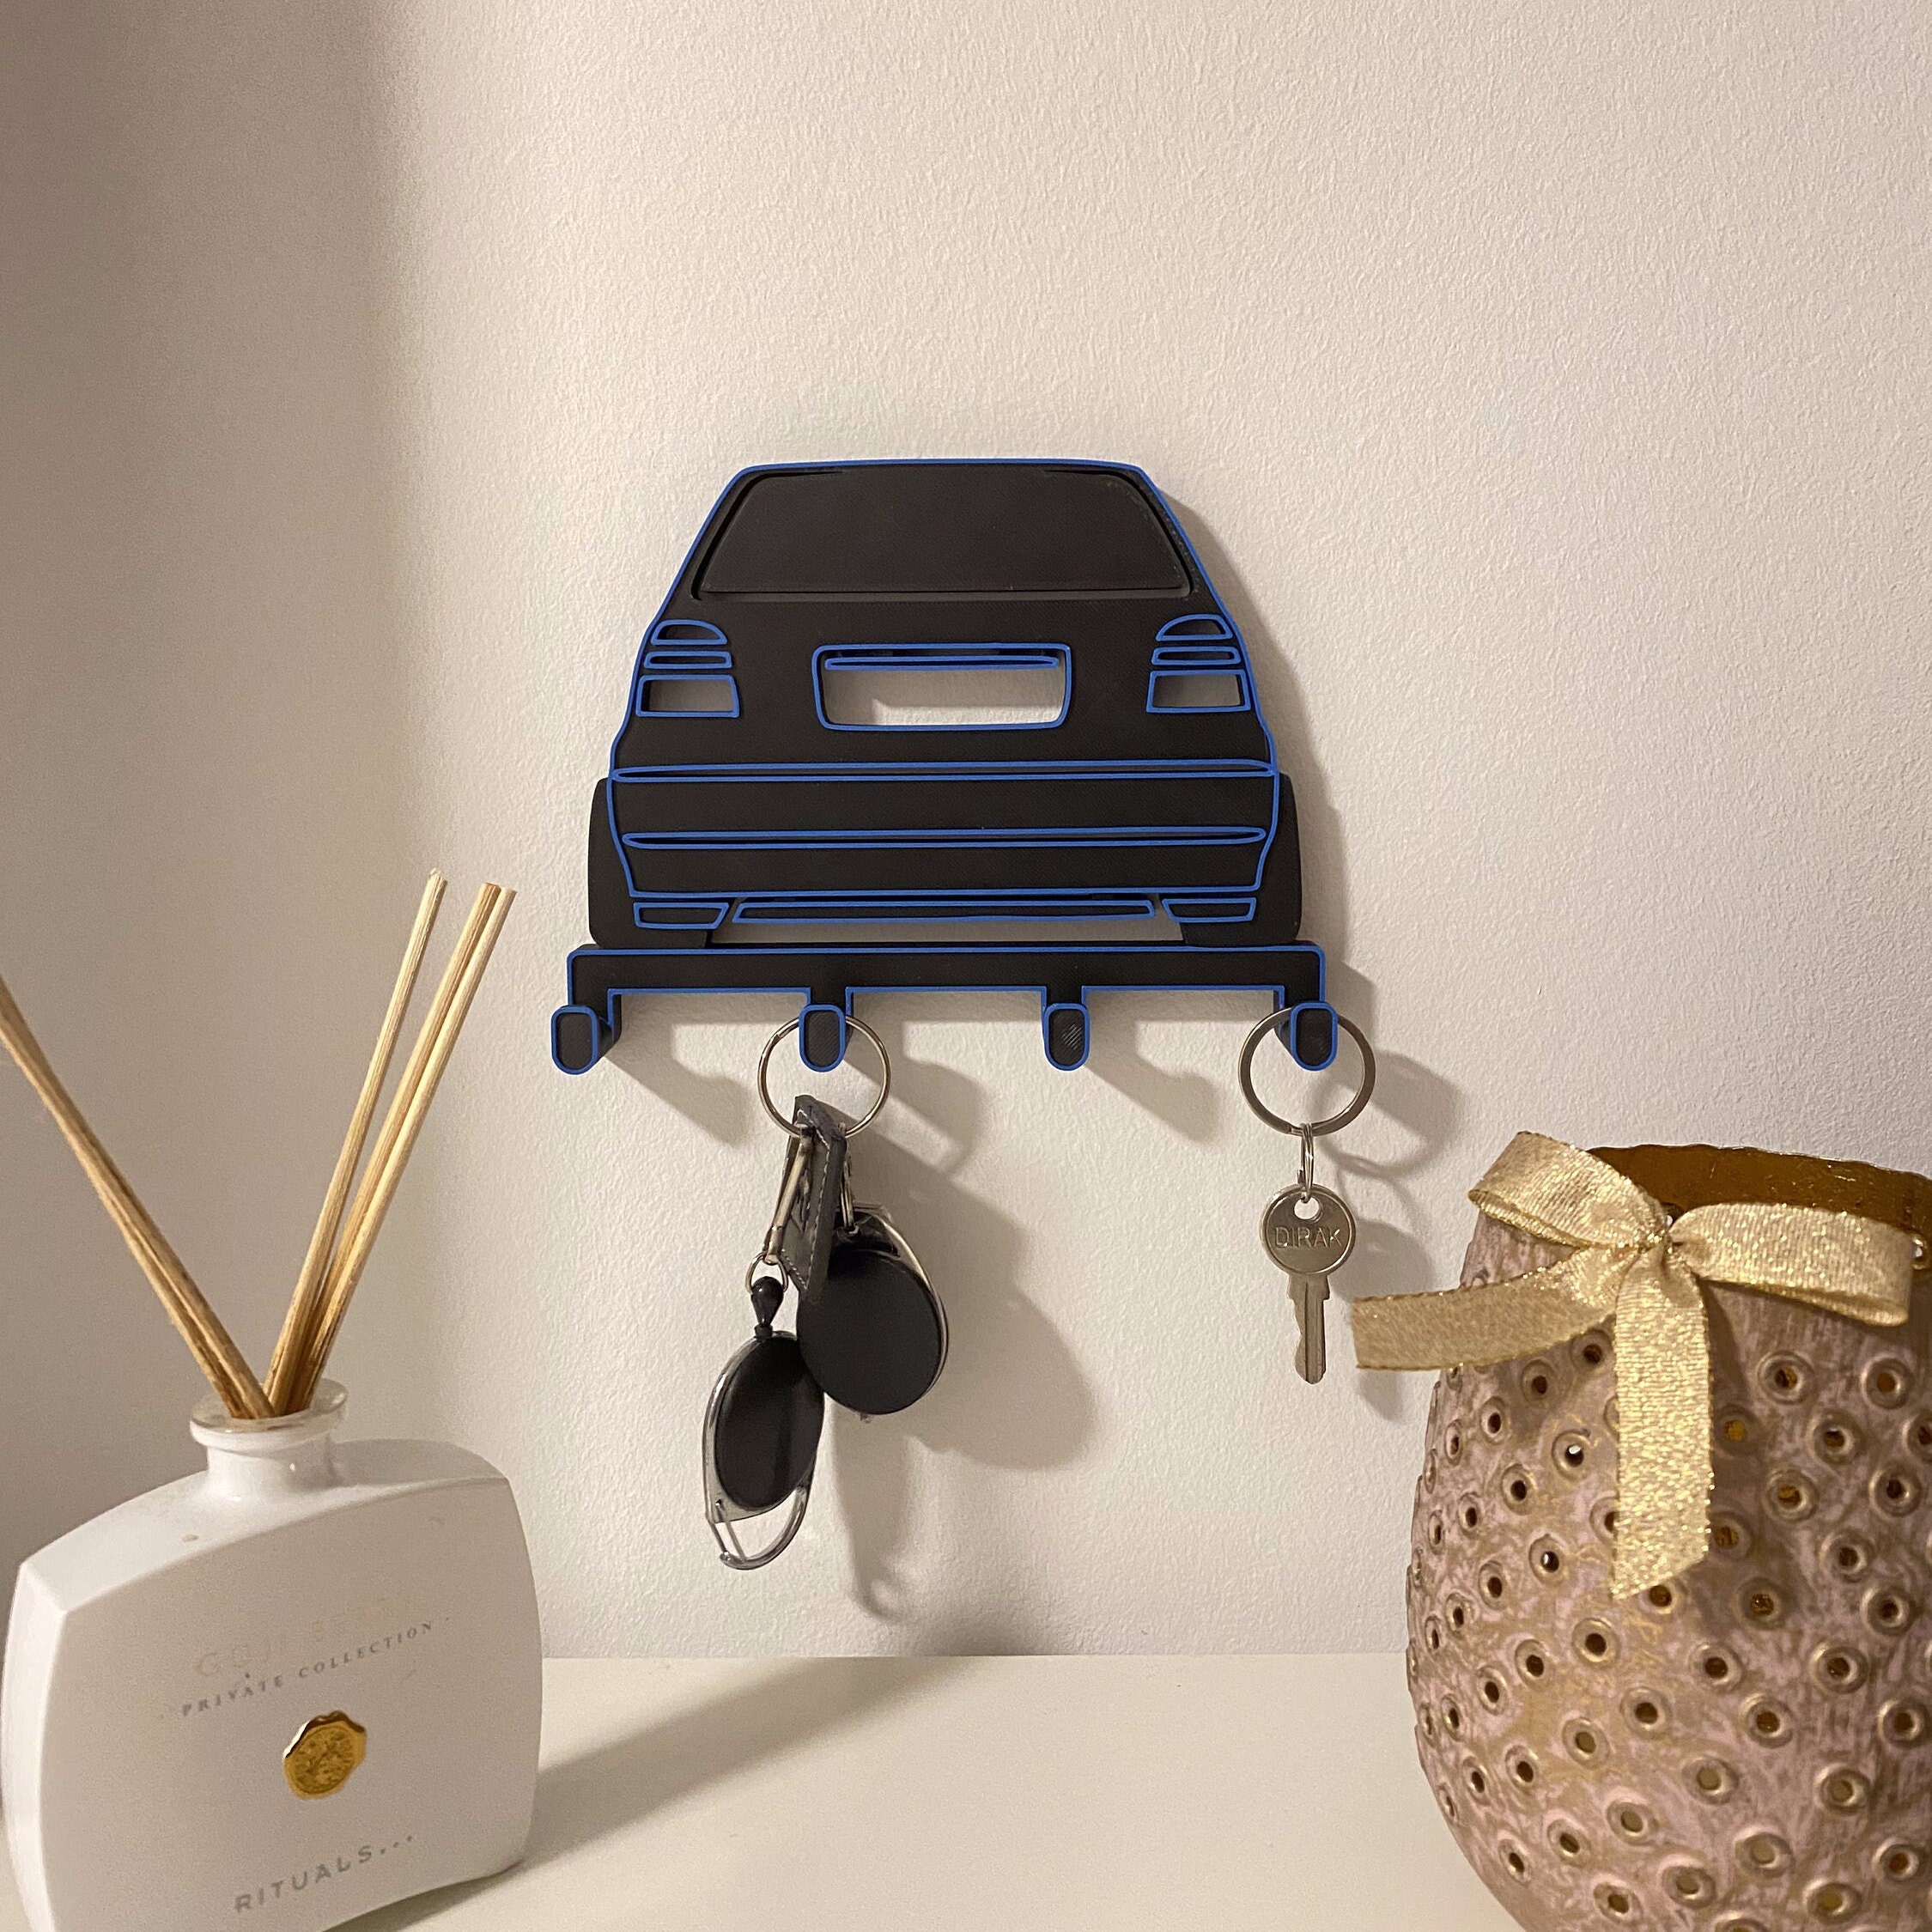 HooRLZ Volkswagen Schlüsselgehäuse für Vw Golf Beetle Jetta Polo